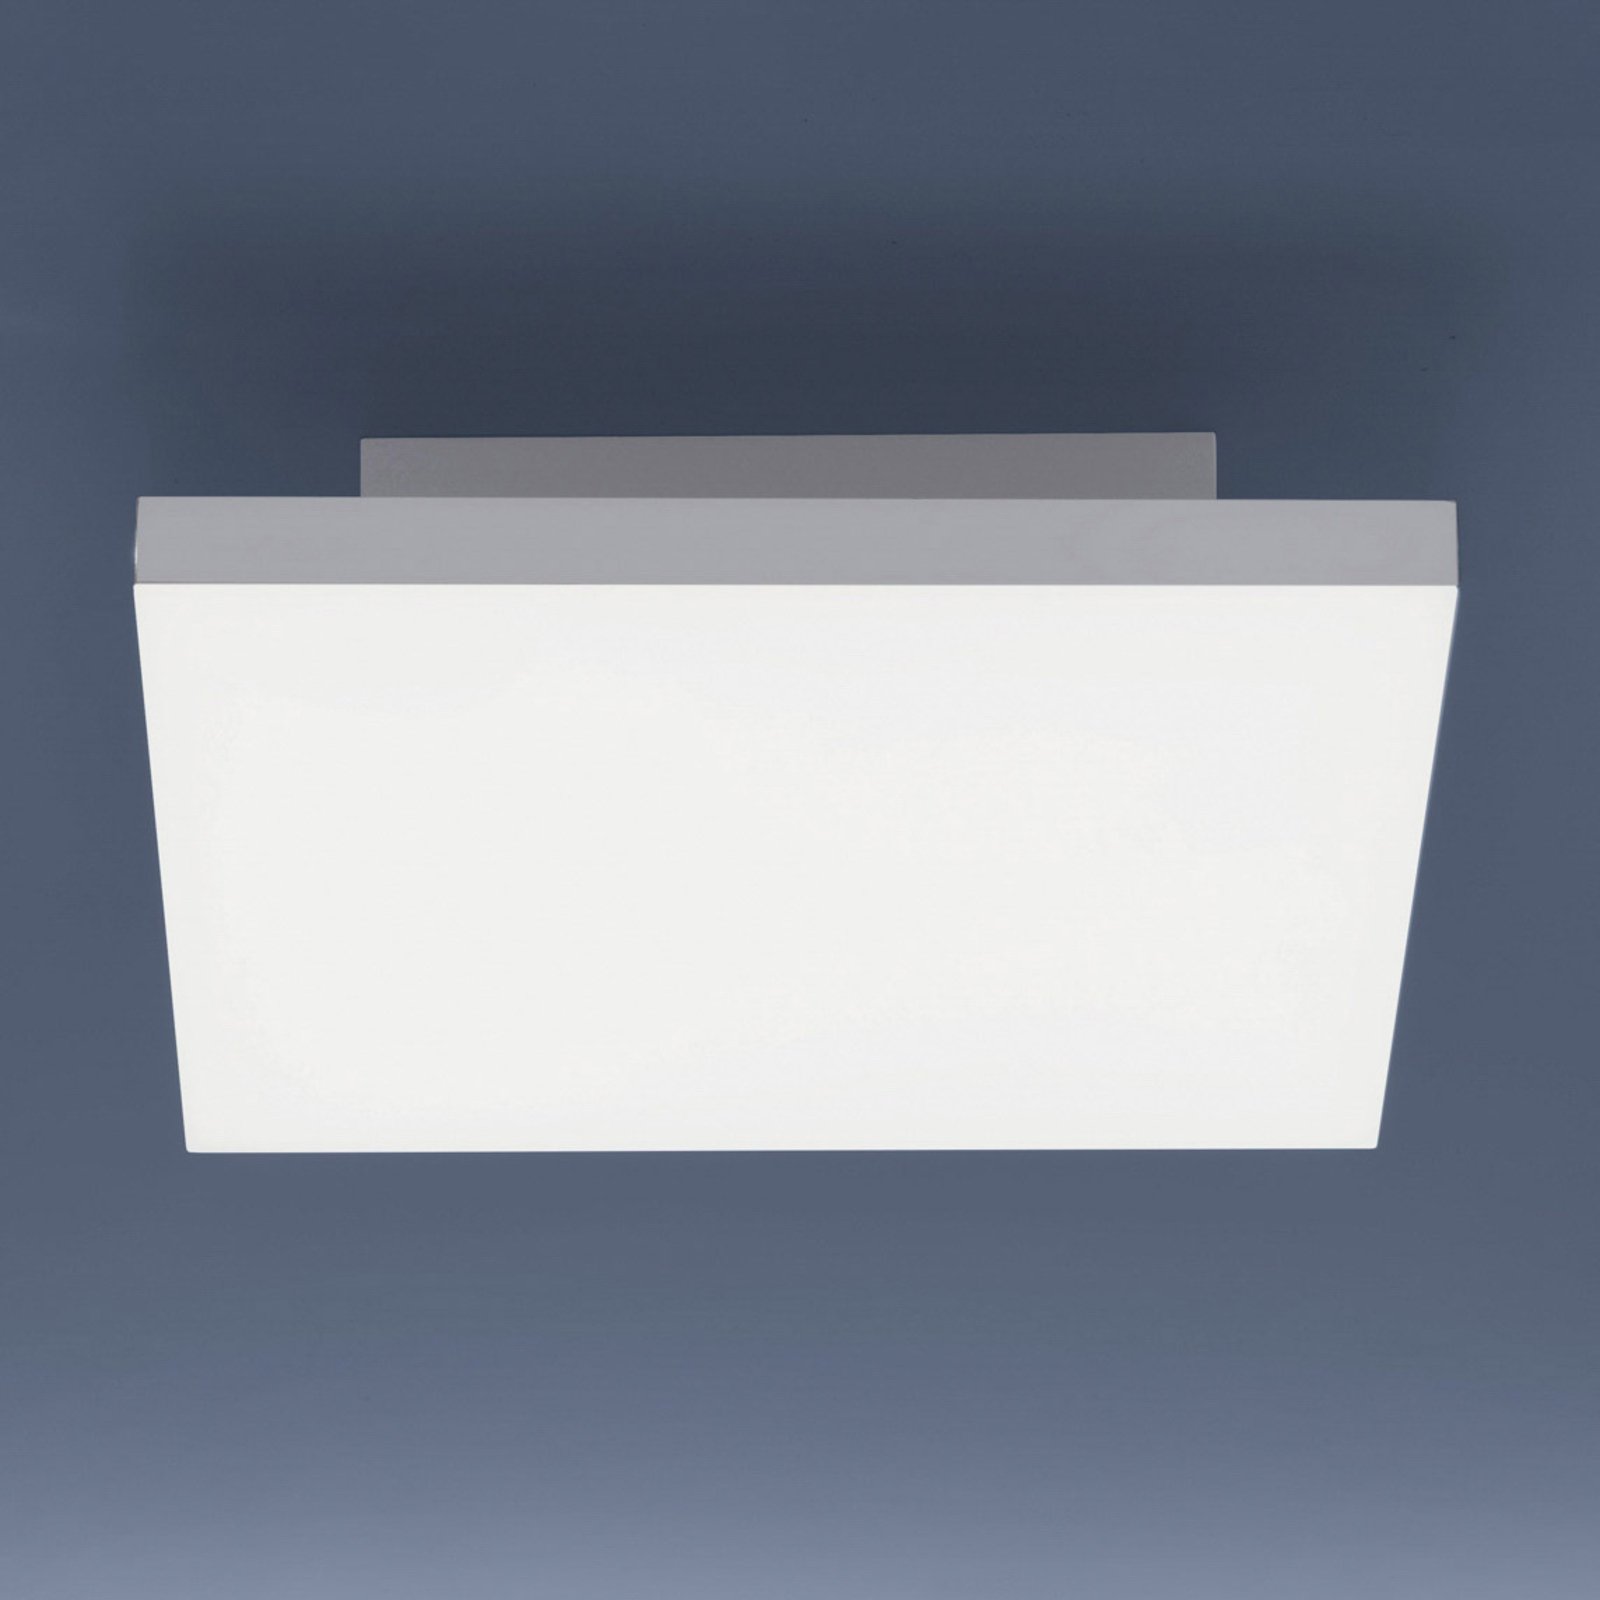 Plafón LED Canvas, tunable white, 30 cm